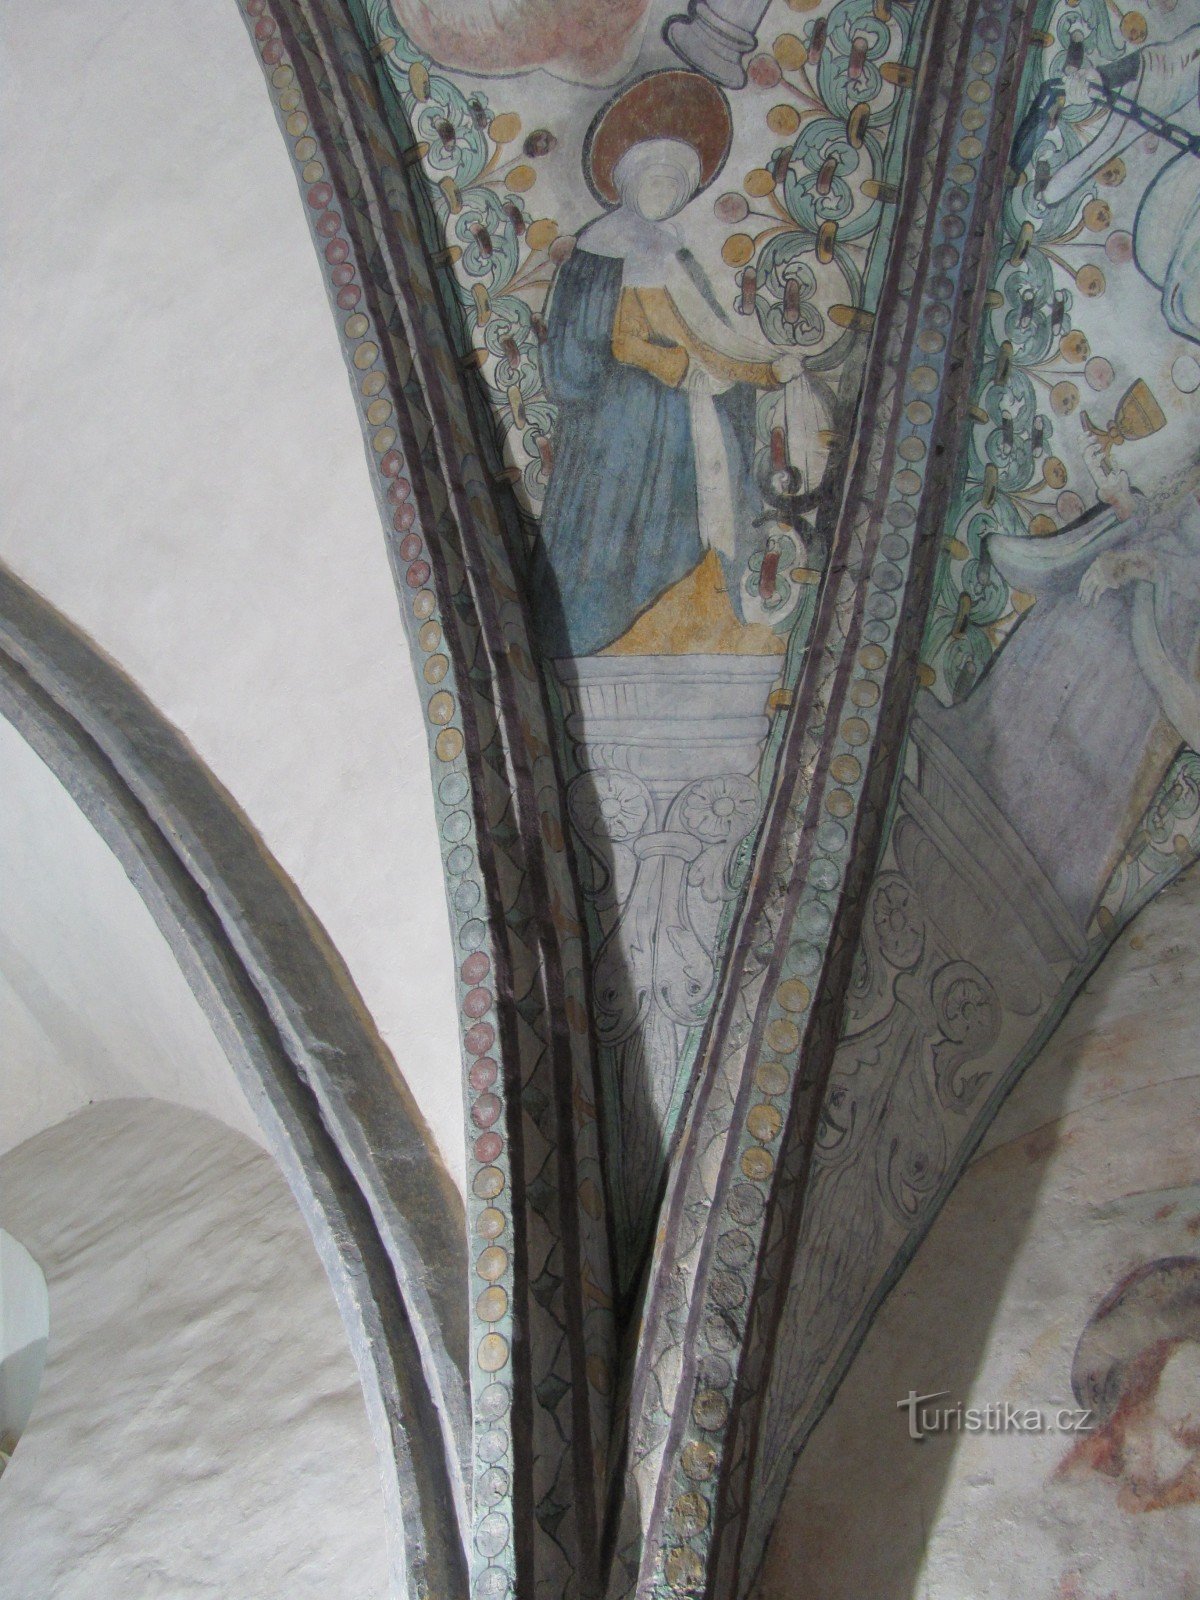 bóveda y frescos en el presbiterio de la capilla